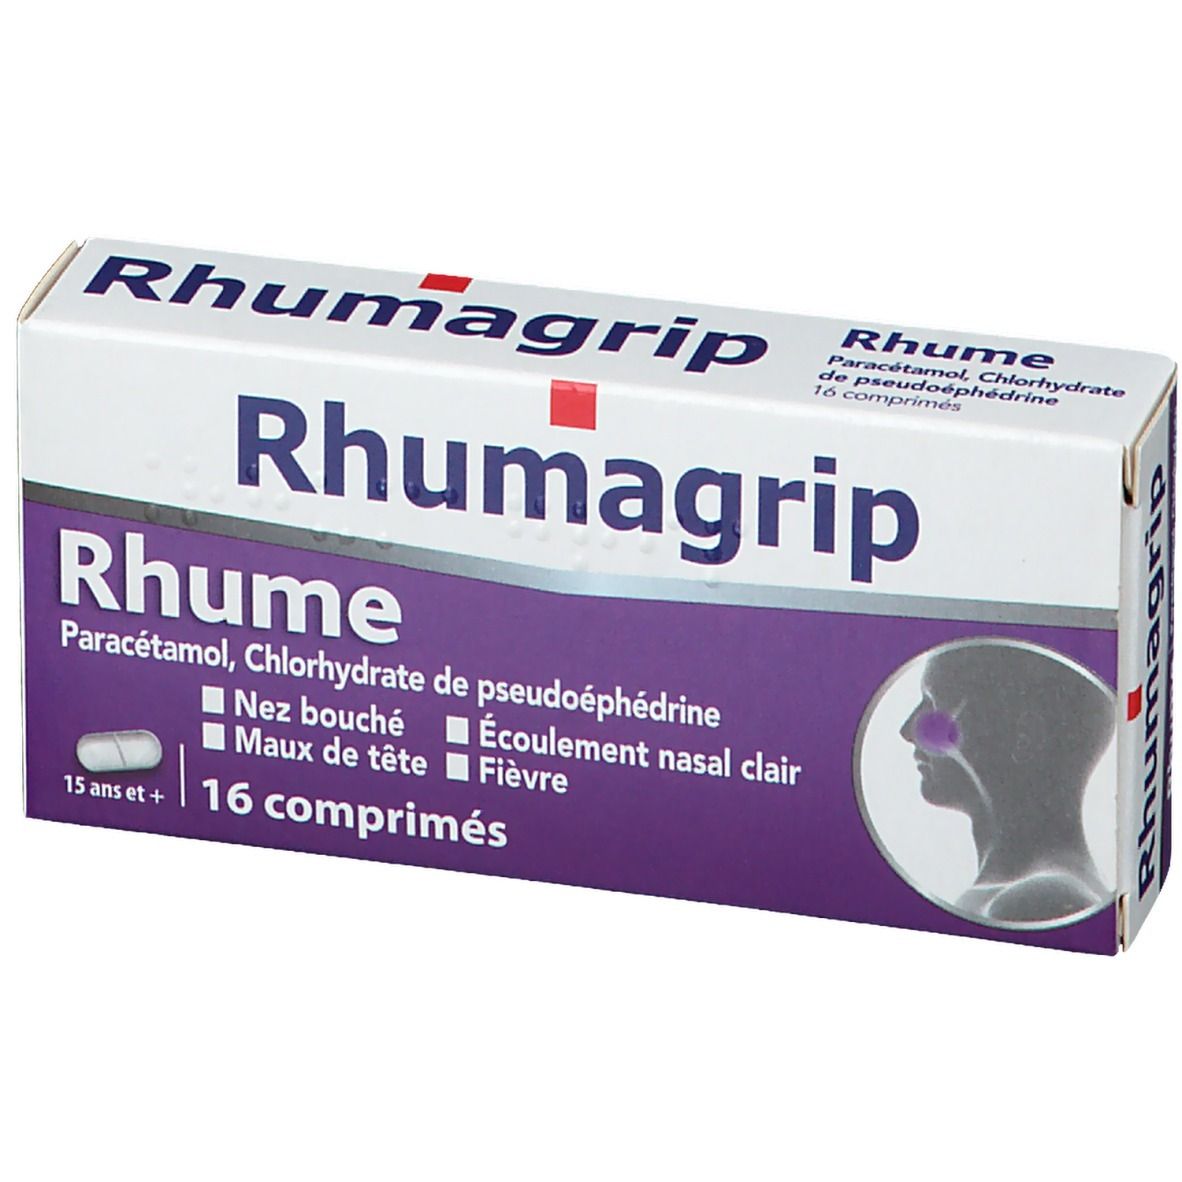 Rhumagrip Rhume